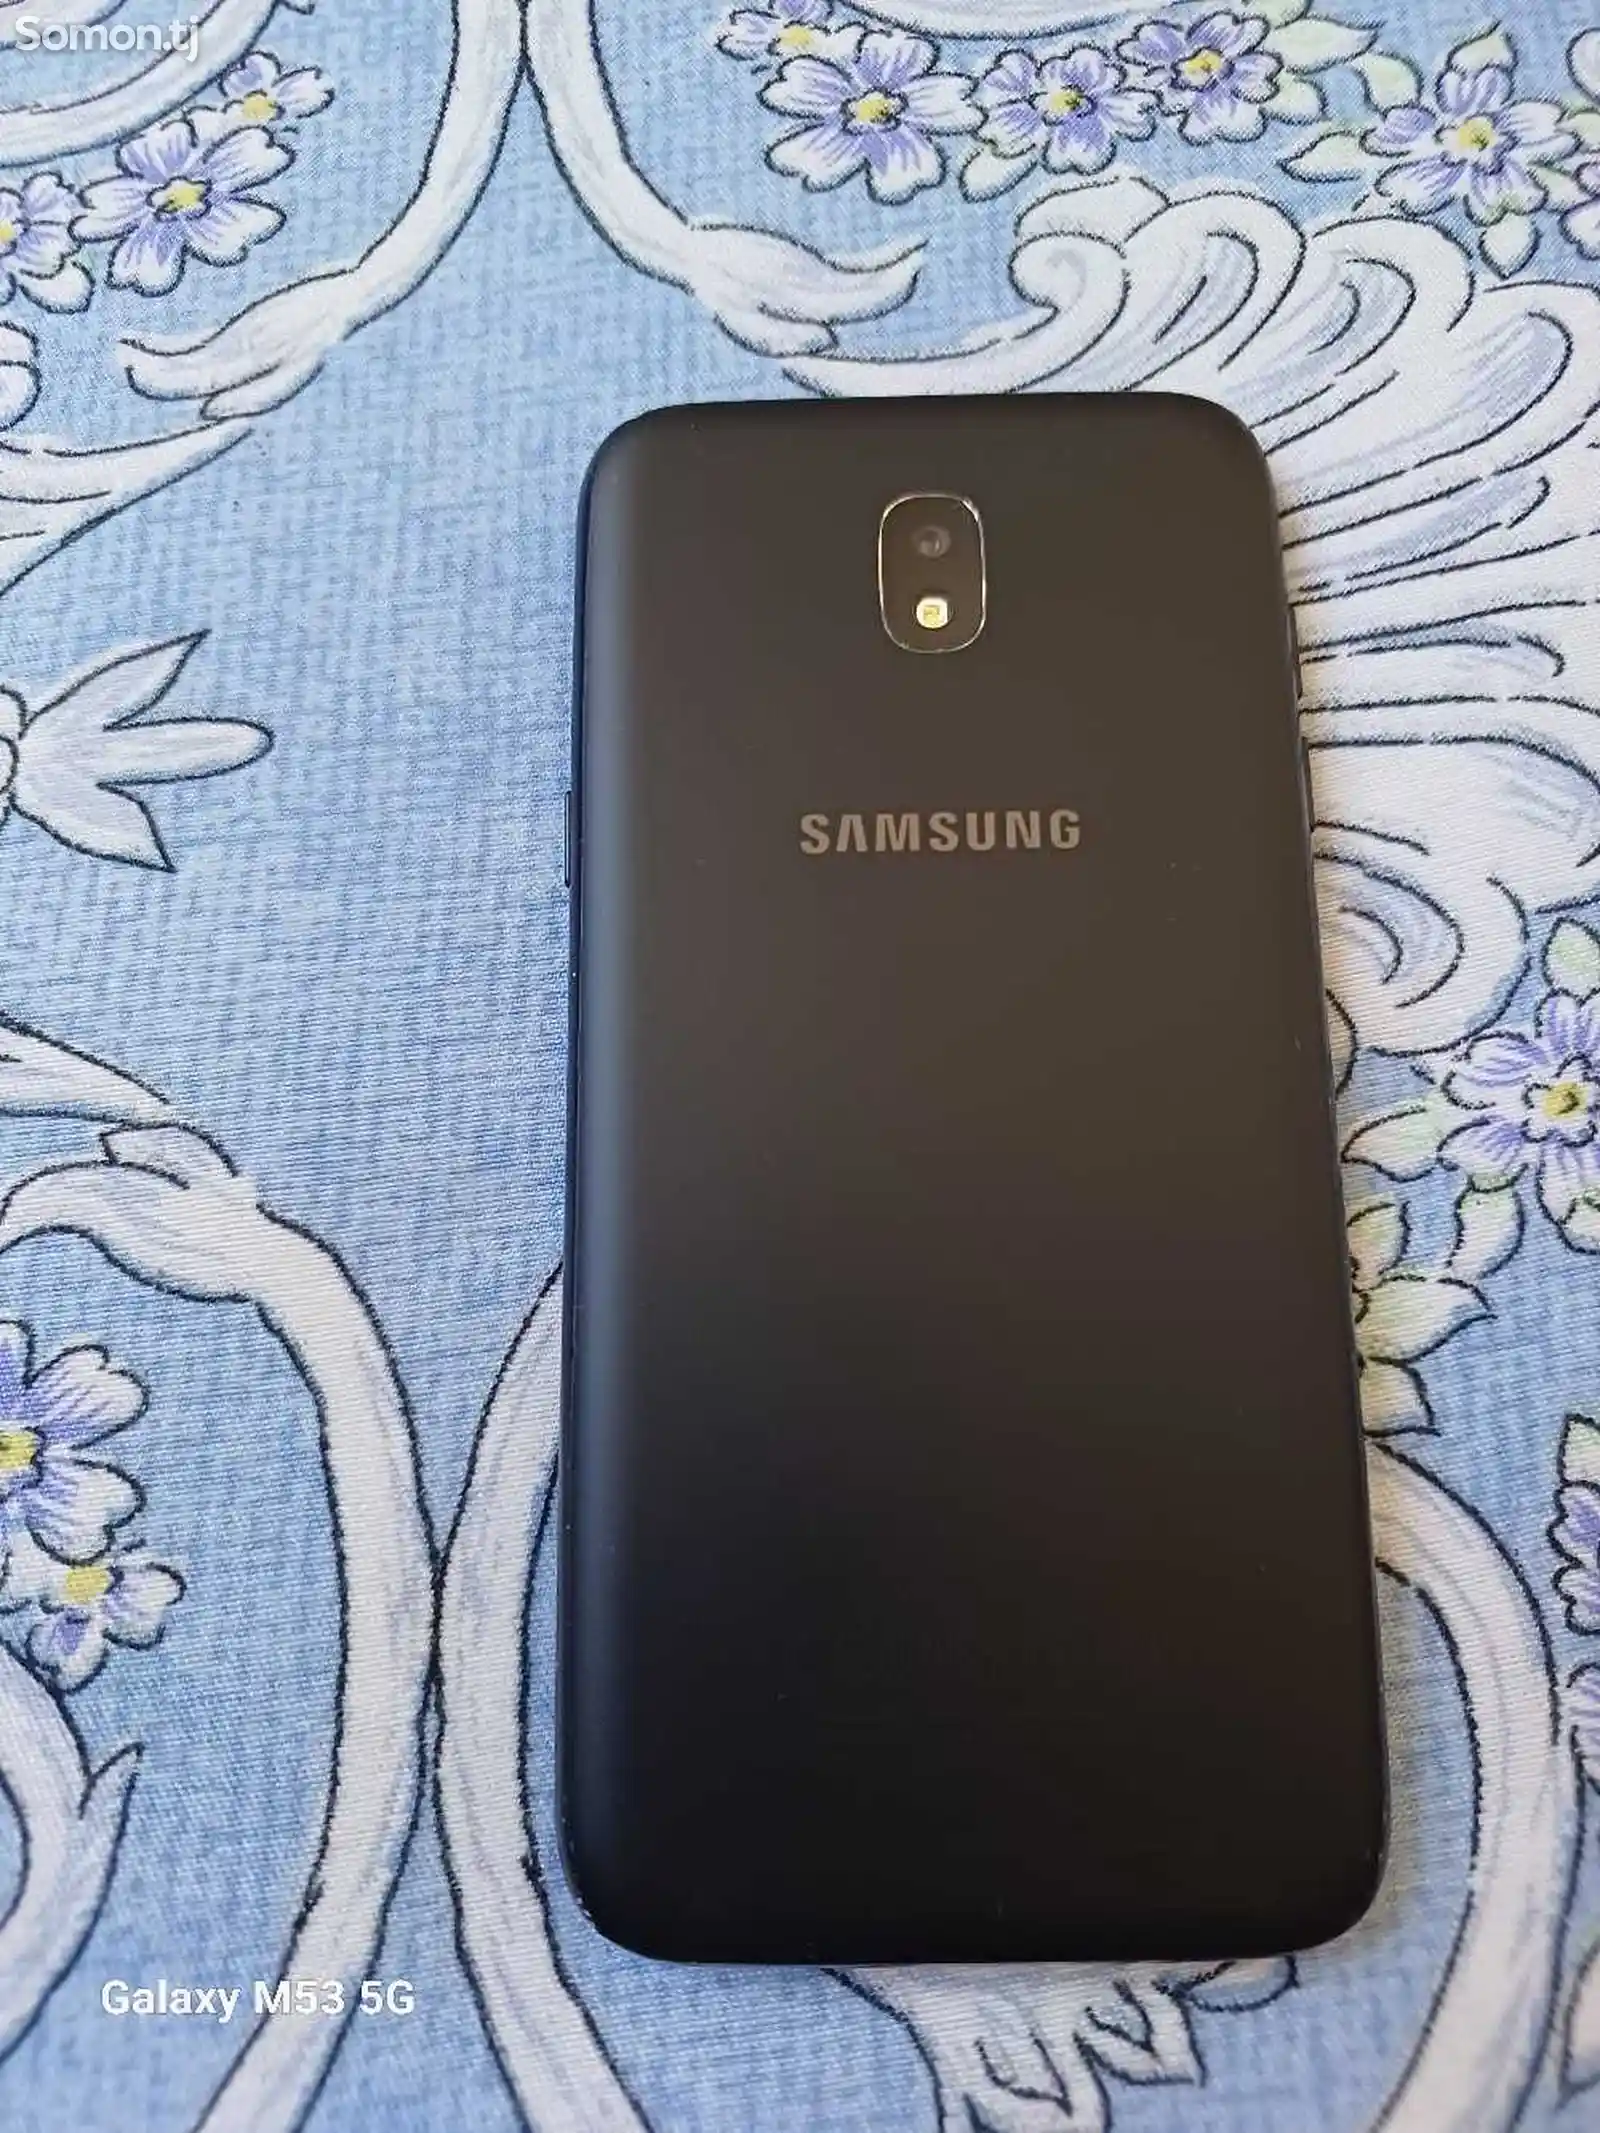 Samsung Galaxy J5-7